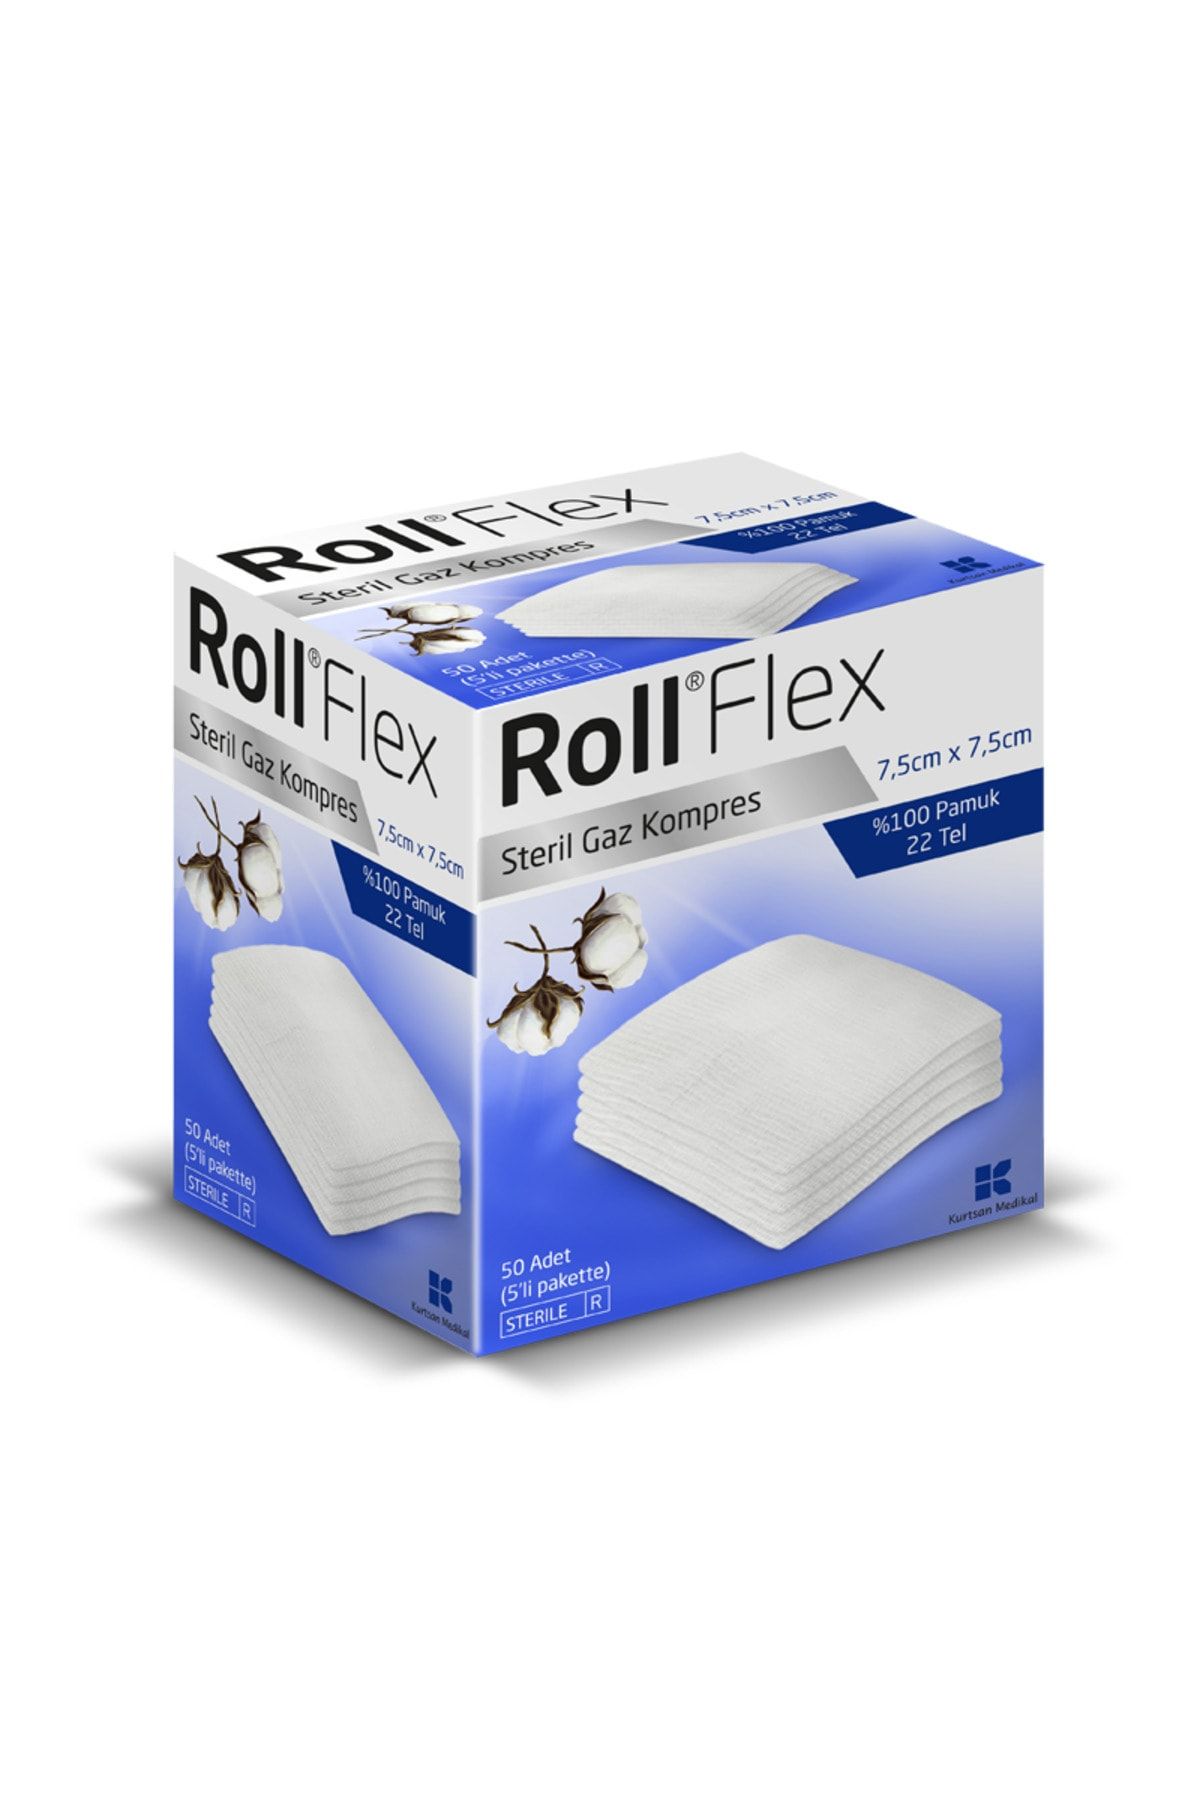 Roll Flex Steril Gaz Kompres Gazlı Bez Spanç 7.5cm*7.5cm - 4 Kutu 100'lü